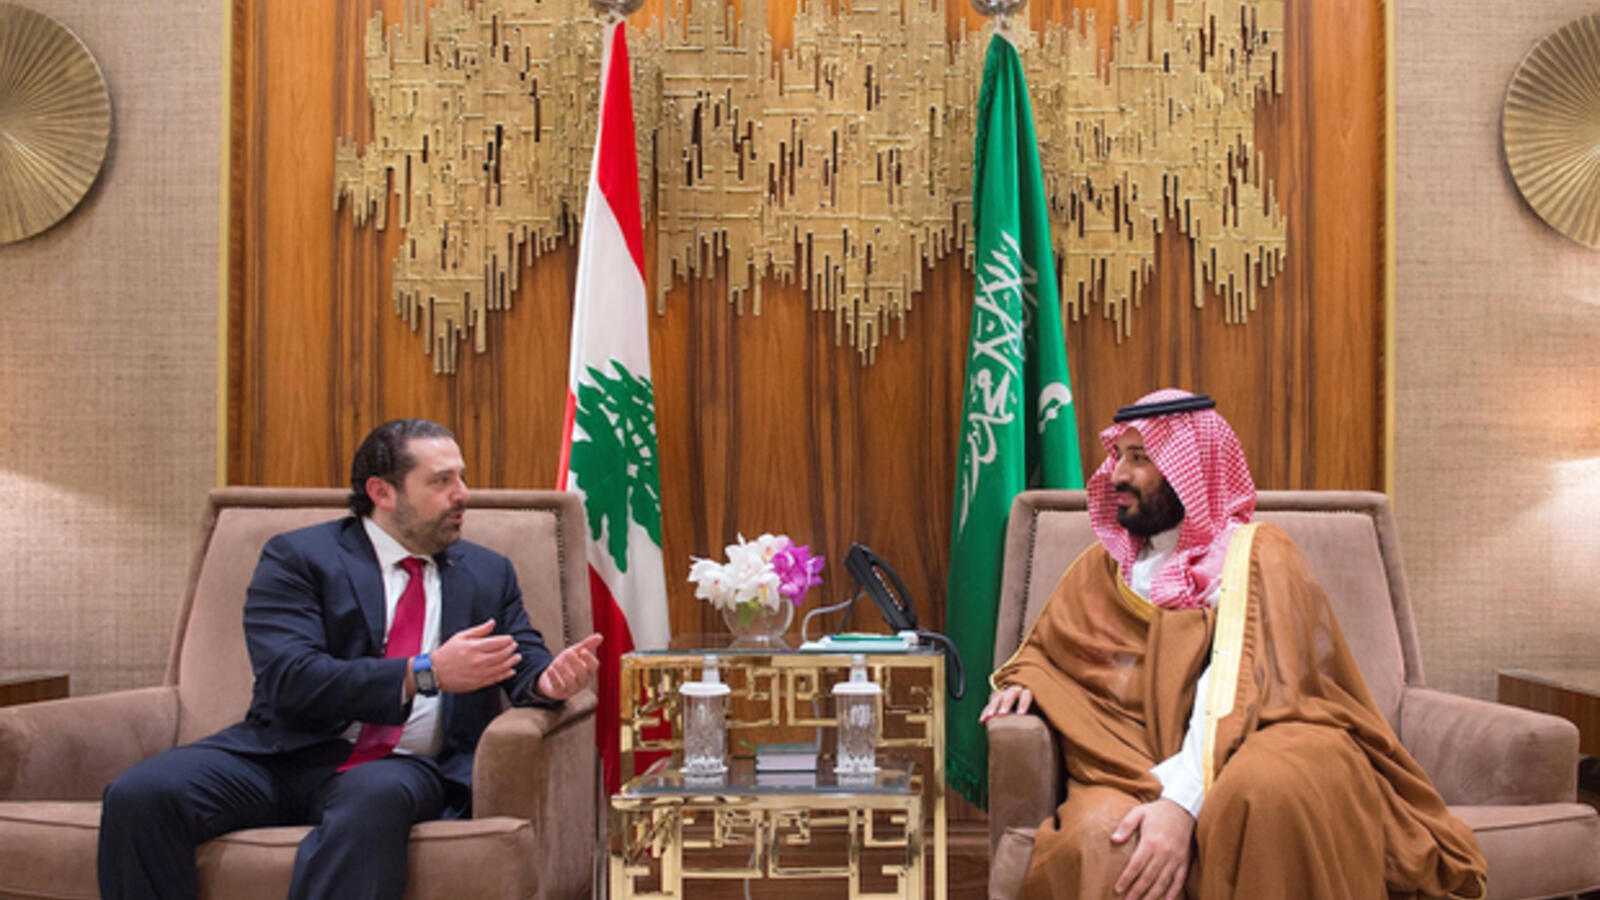 Dimensions and Implications of Hariri-Saudi Encounter